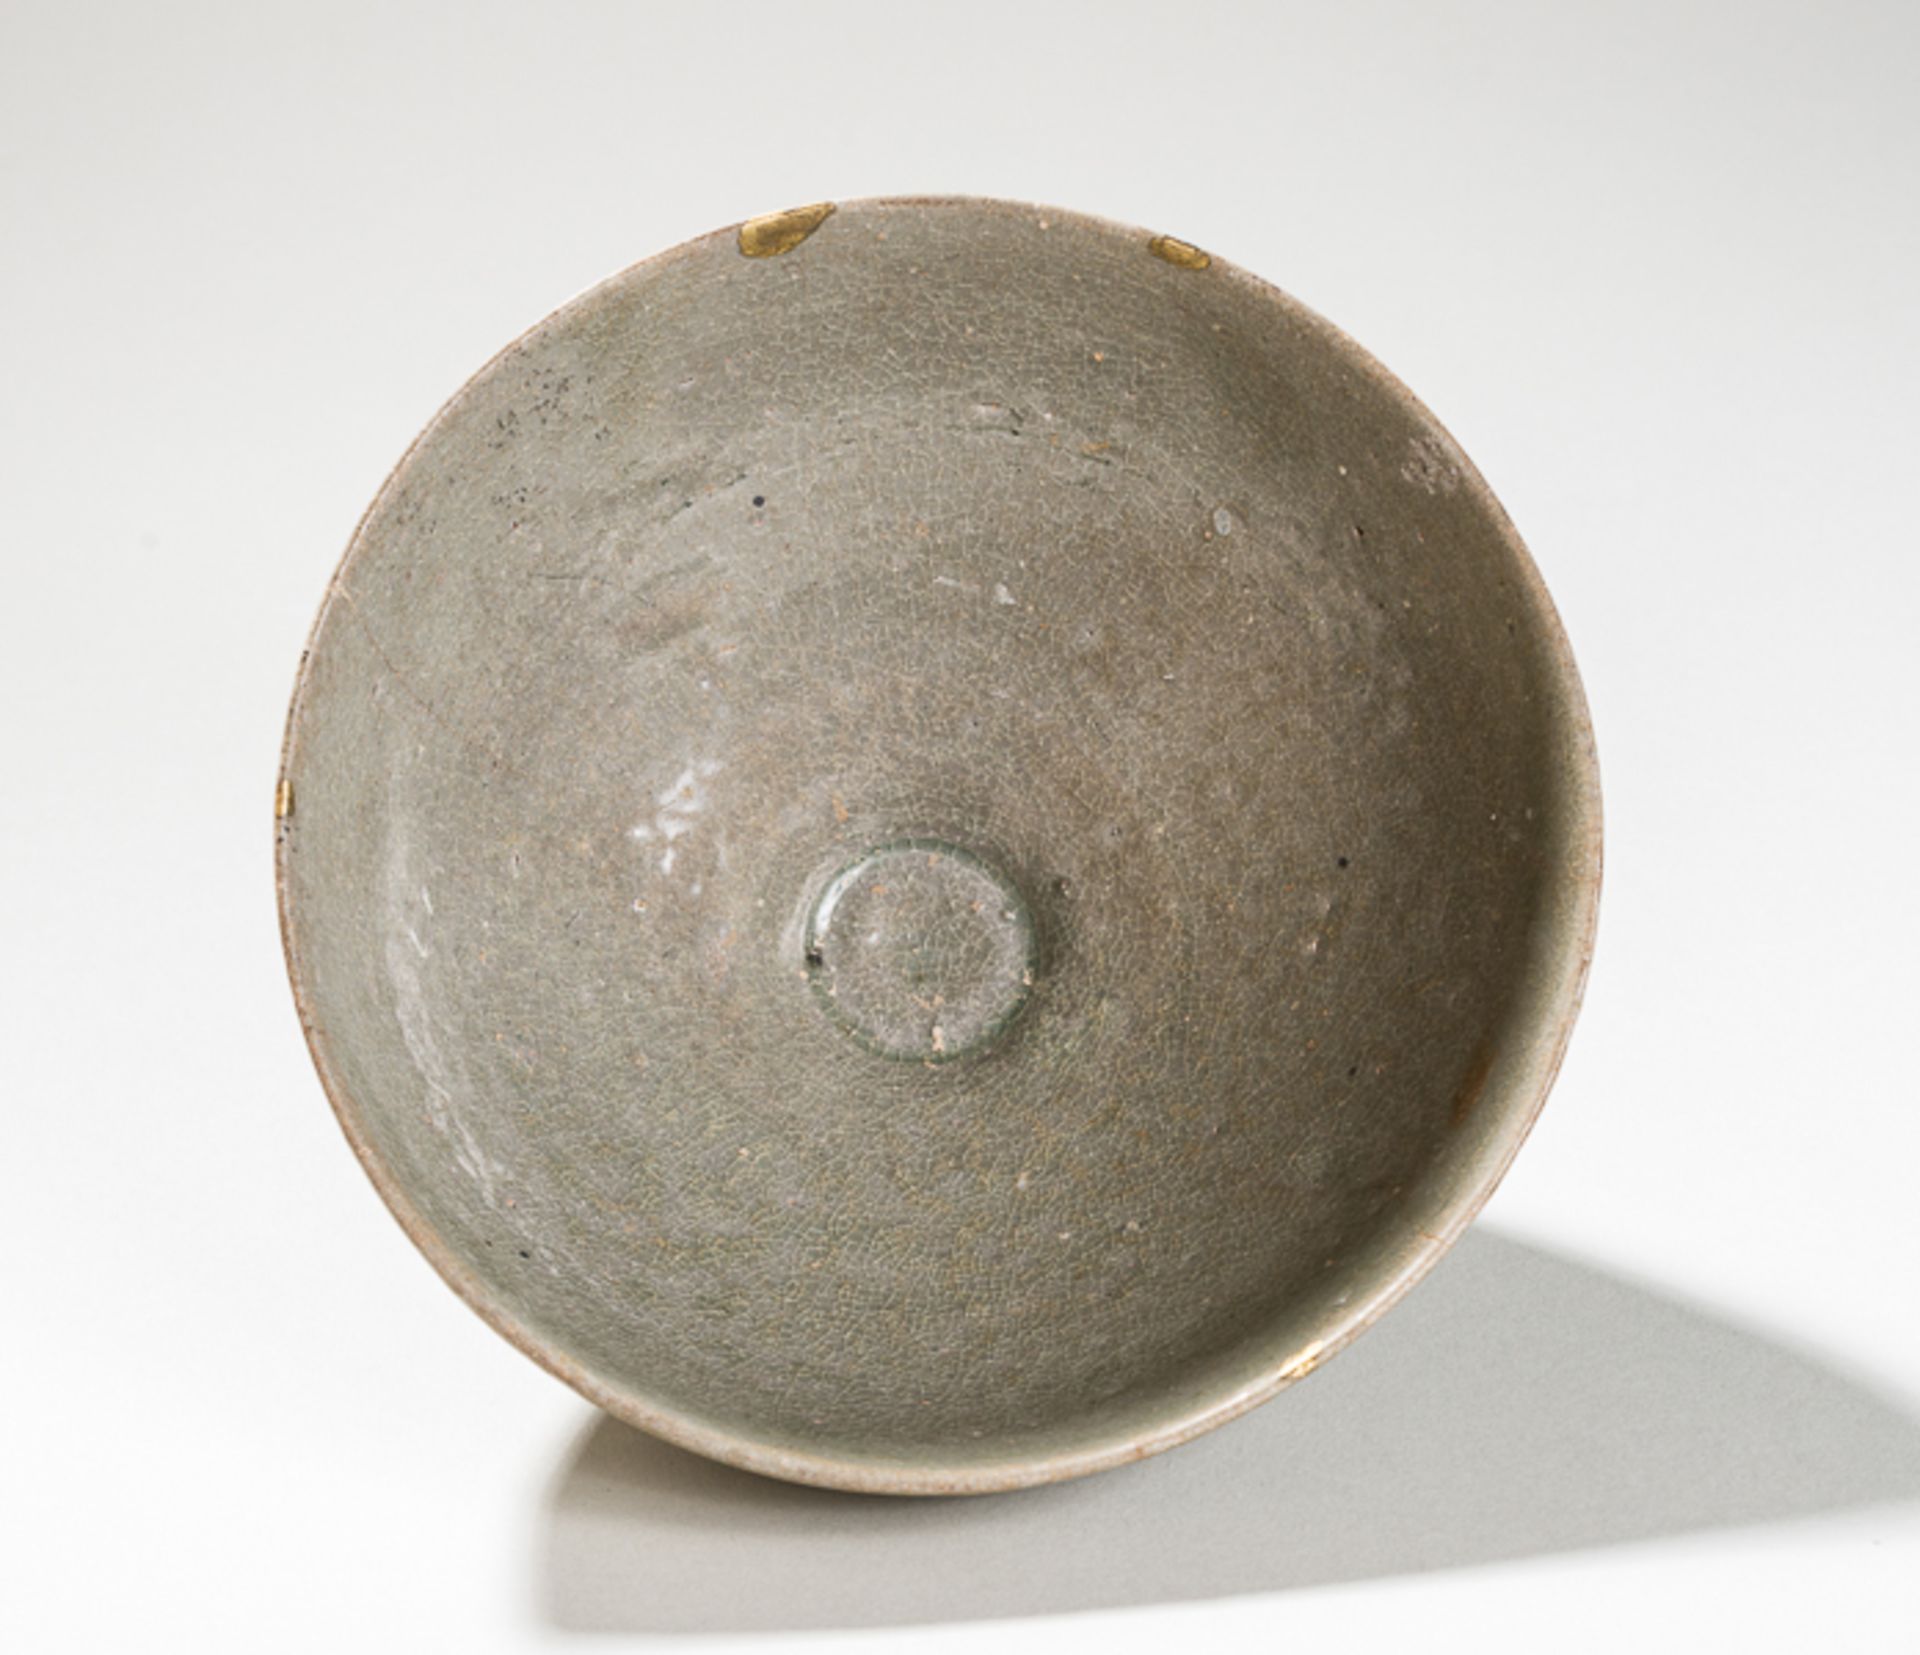 TIEFE SCHALE MIT SELADONGLASURGlasiertes Steingut. Korea, Koryo-Dynastie, ca. 12. bis 13. Jh.Seltene - Bild 2 aus 4